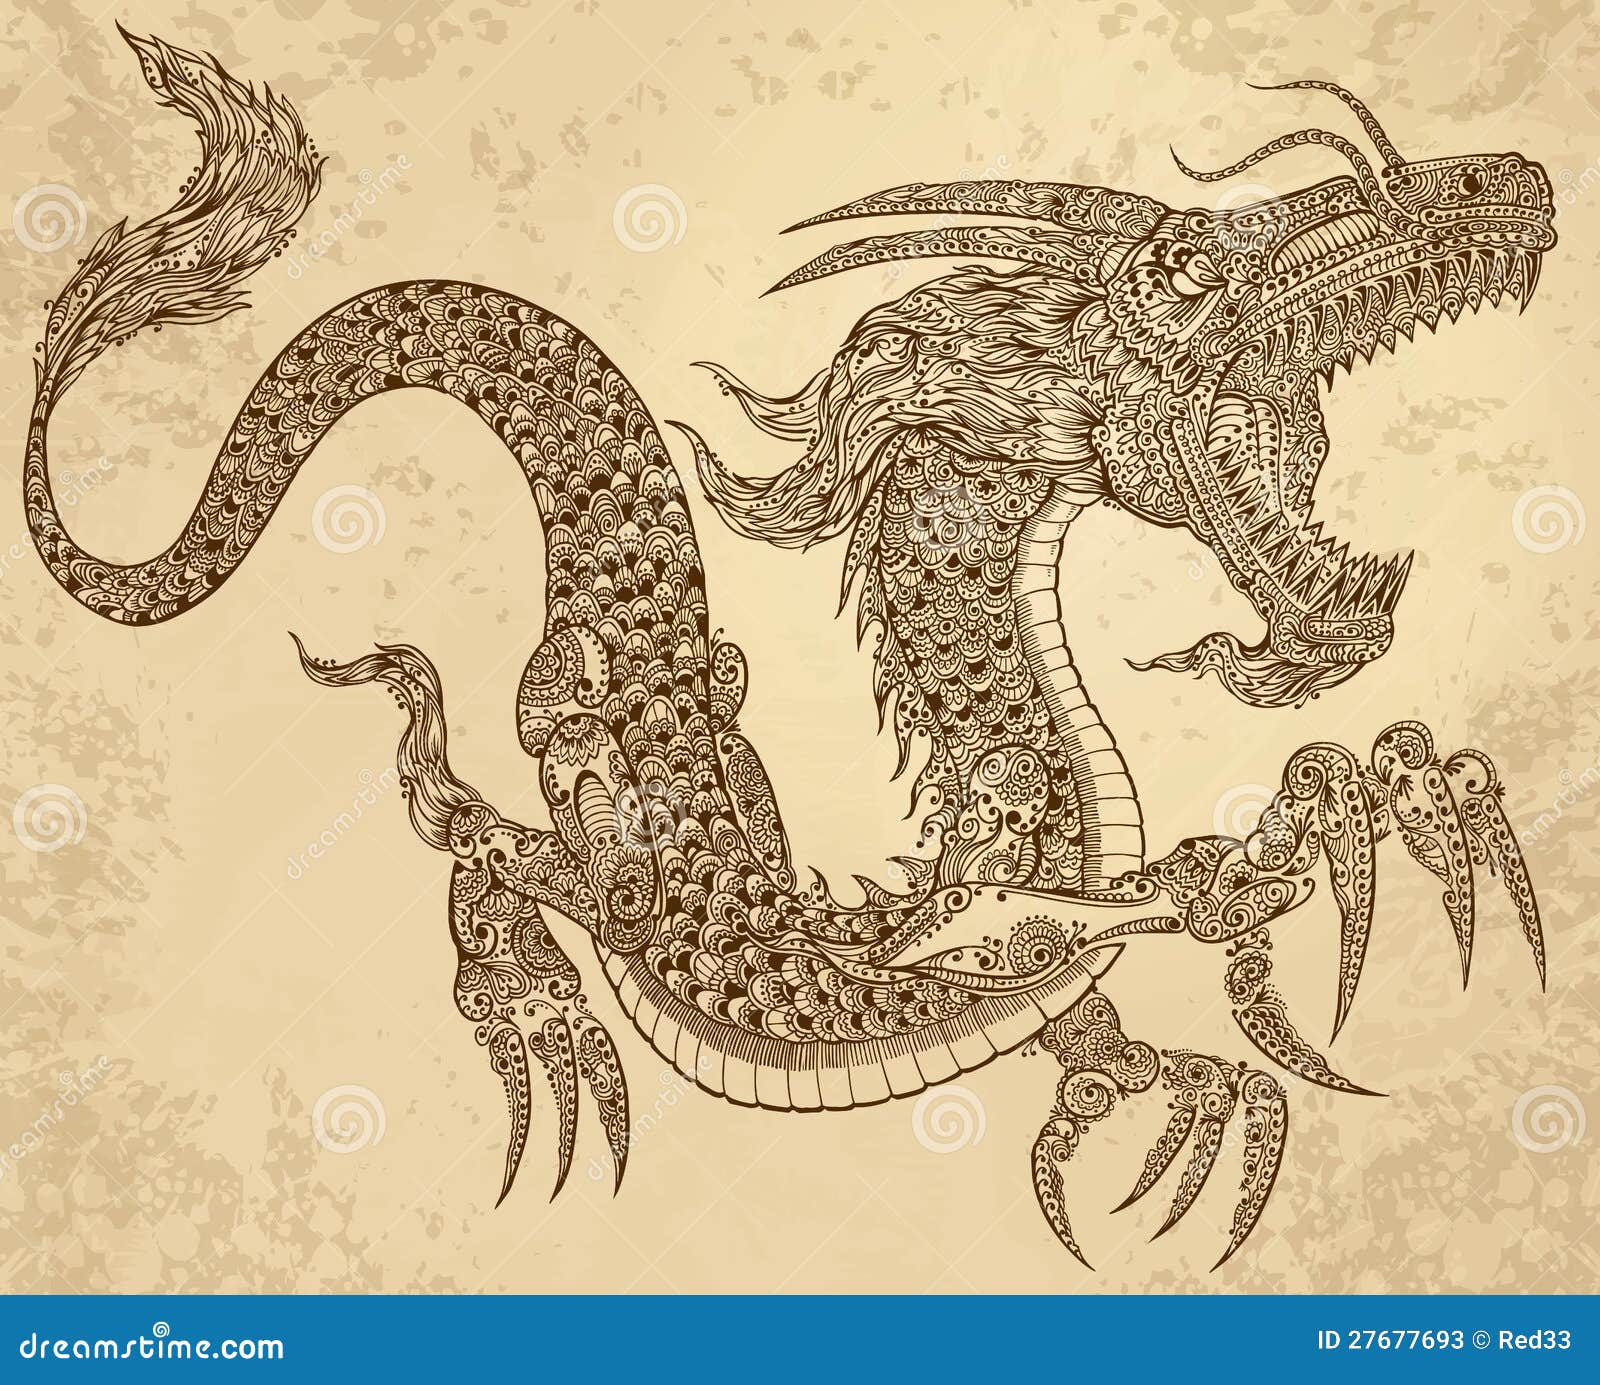 Raging Chinese Dragon Henna Tattoo by iluedwardcullen on DeviantArt